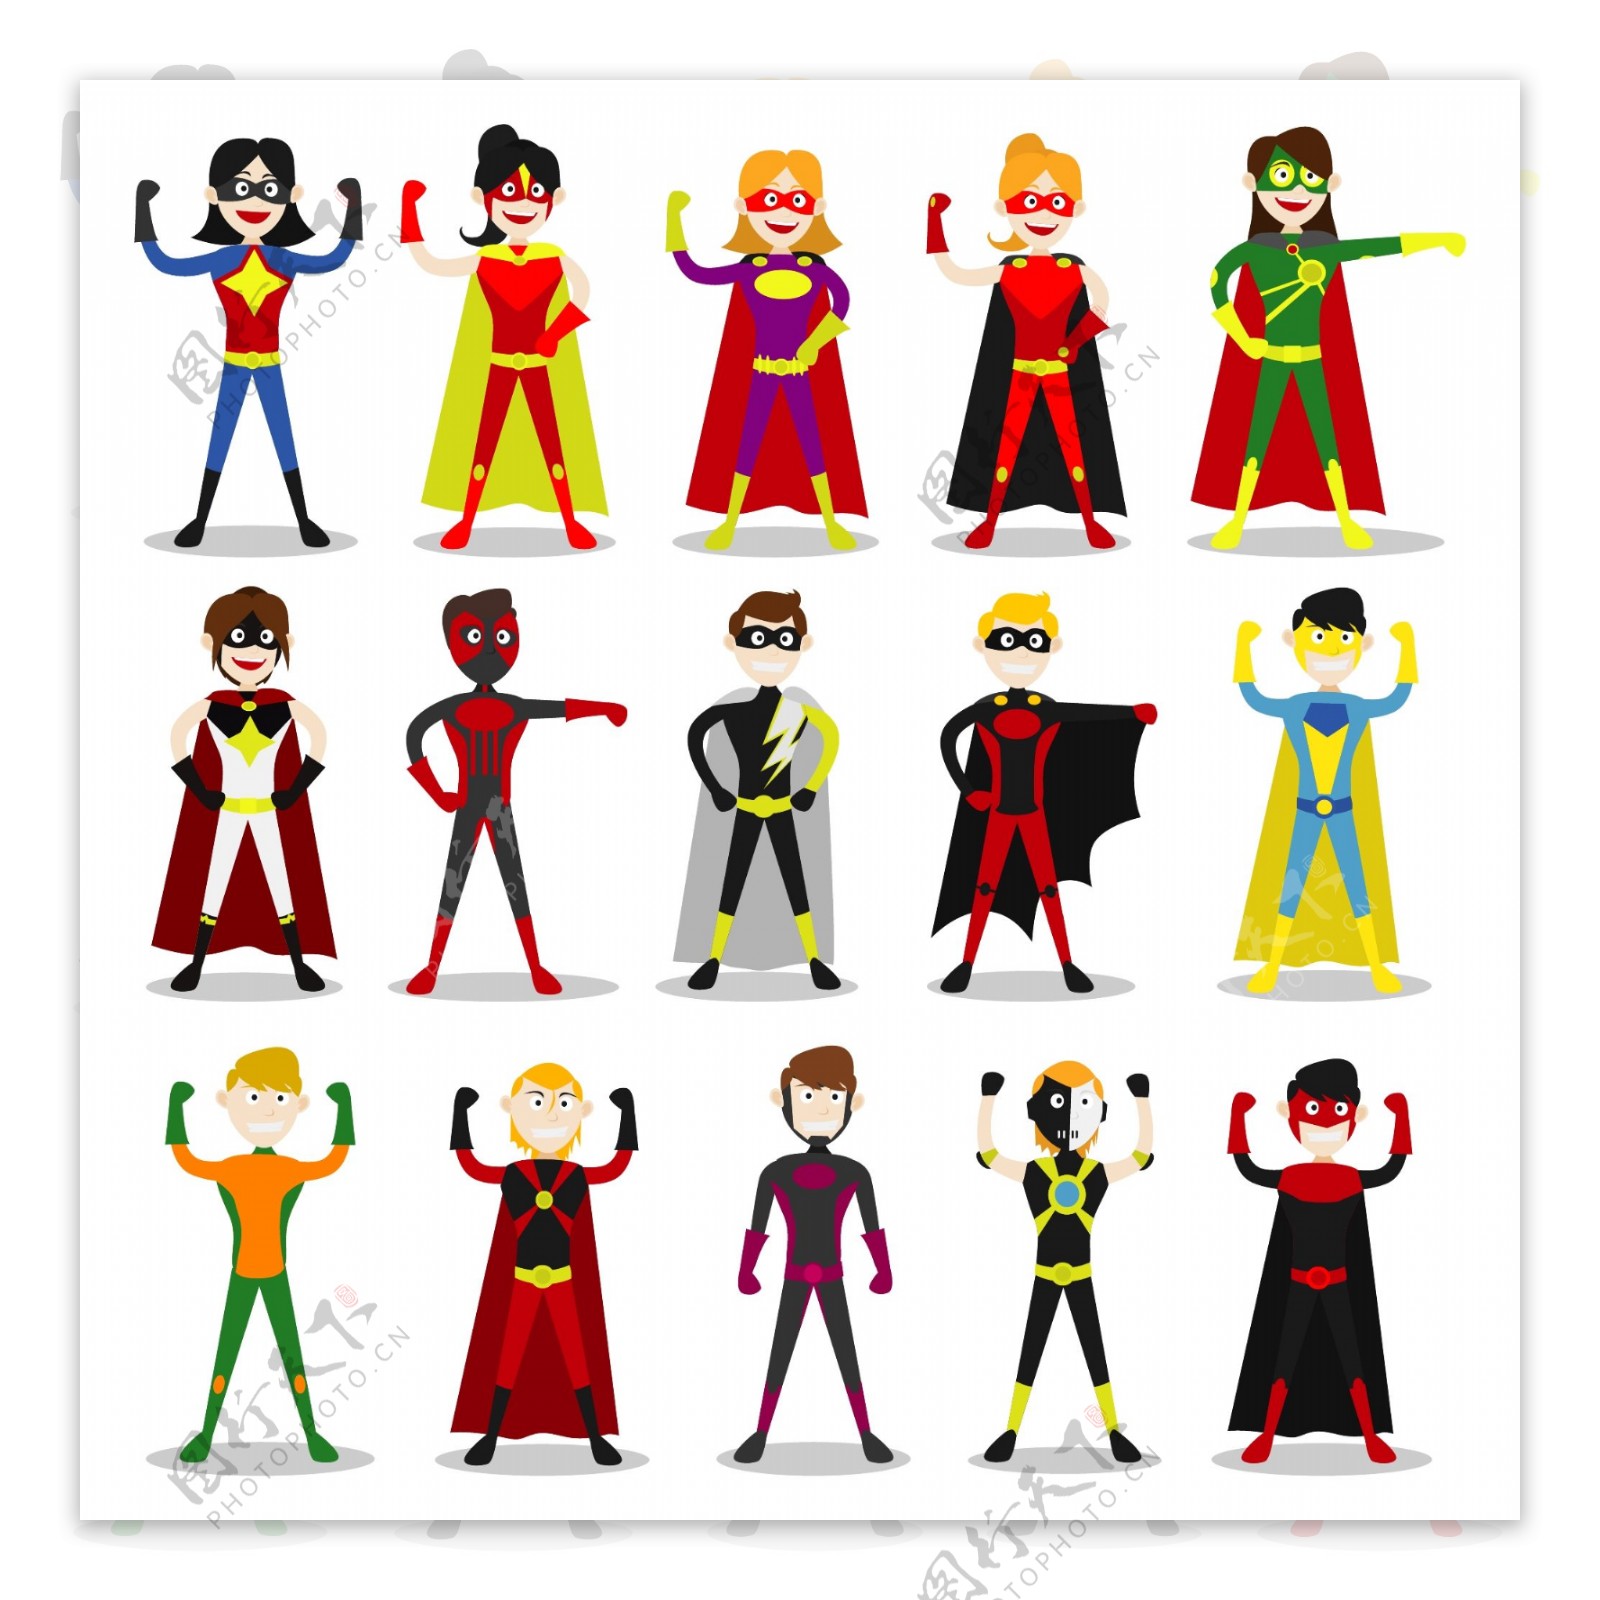 各种英雄卡通超人人物素材合集矢量图